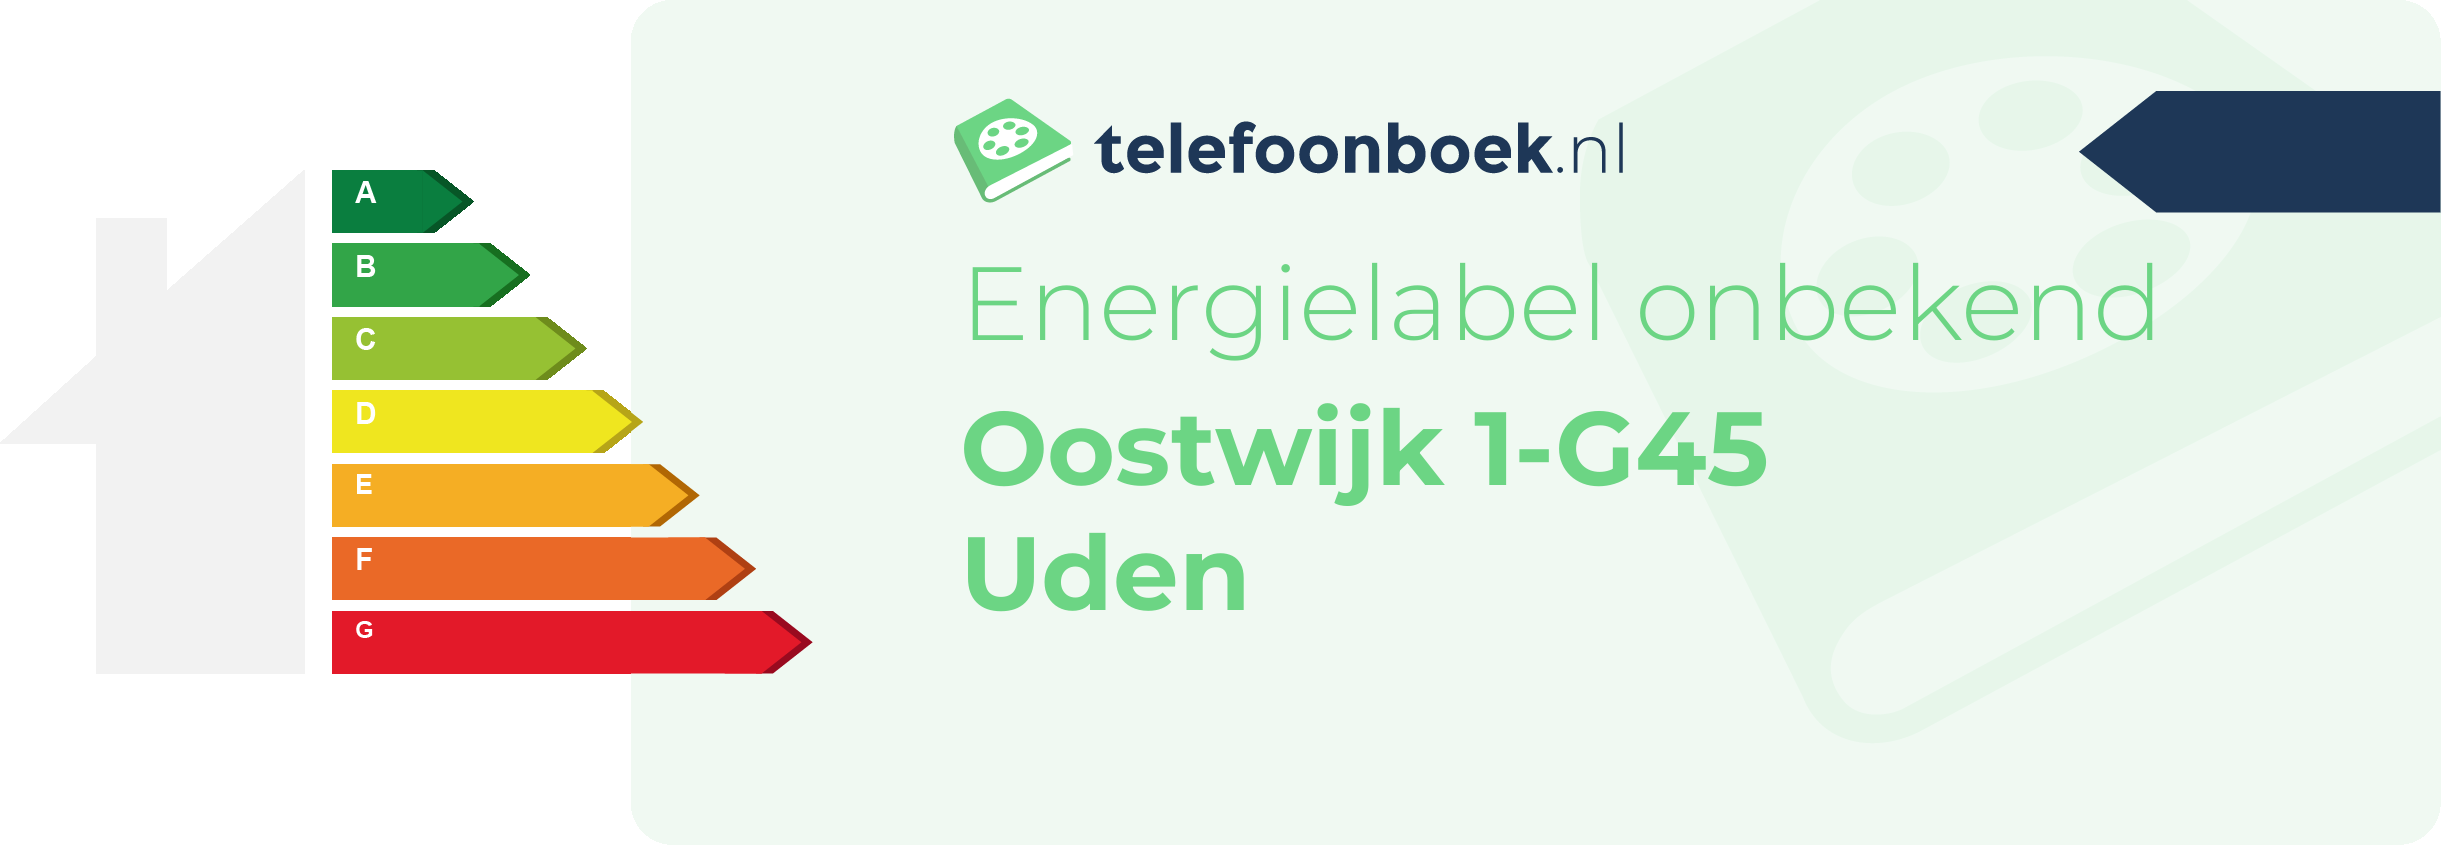 Energielabel Oostwijk 1-G45 Uden